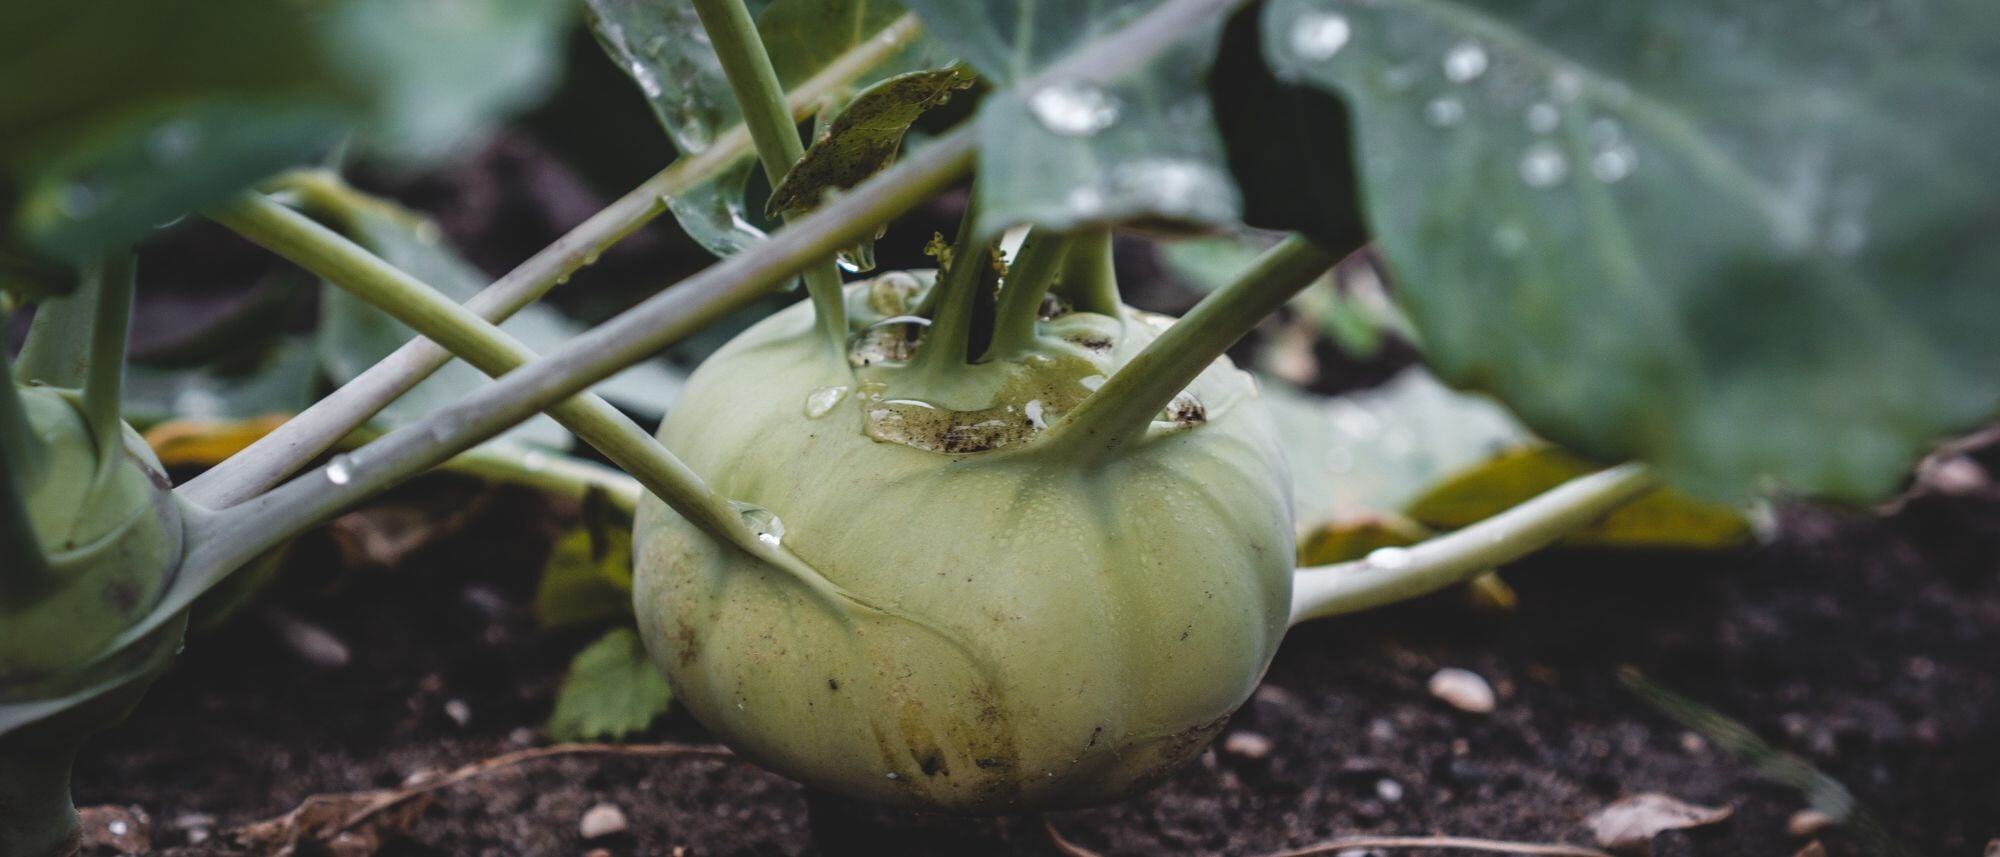 Grow kohlrabi in your home vegetable garden